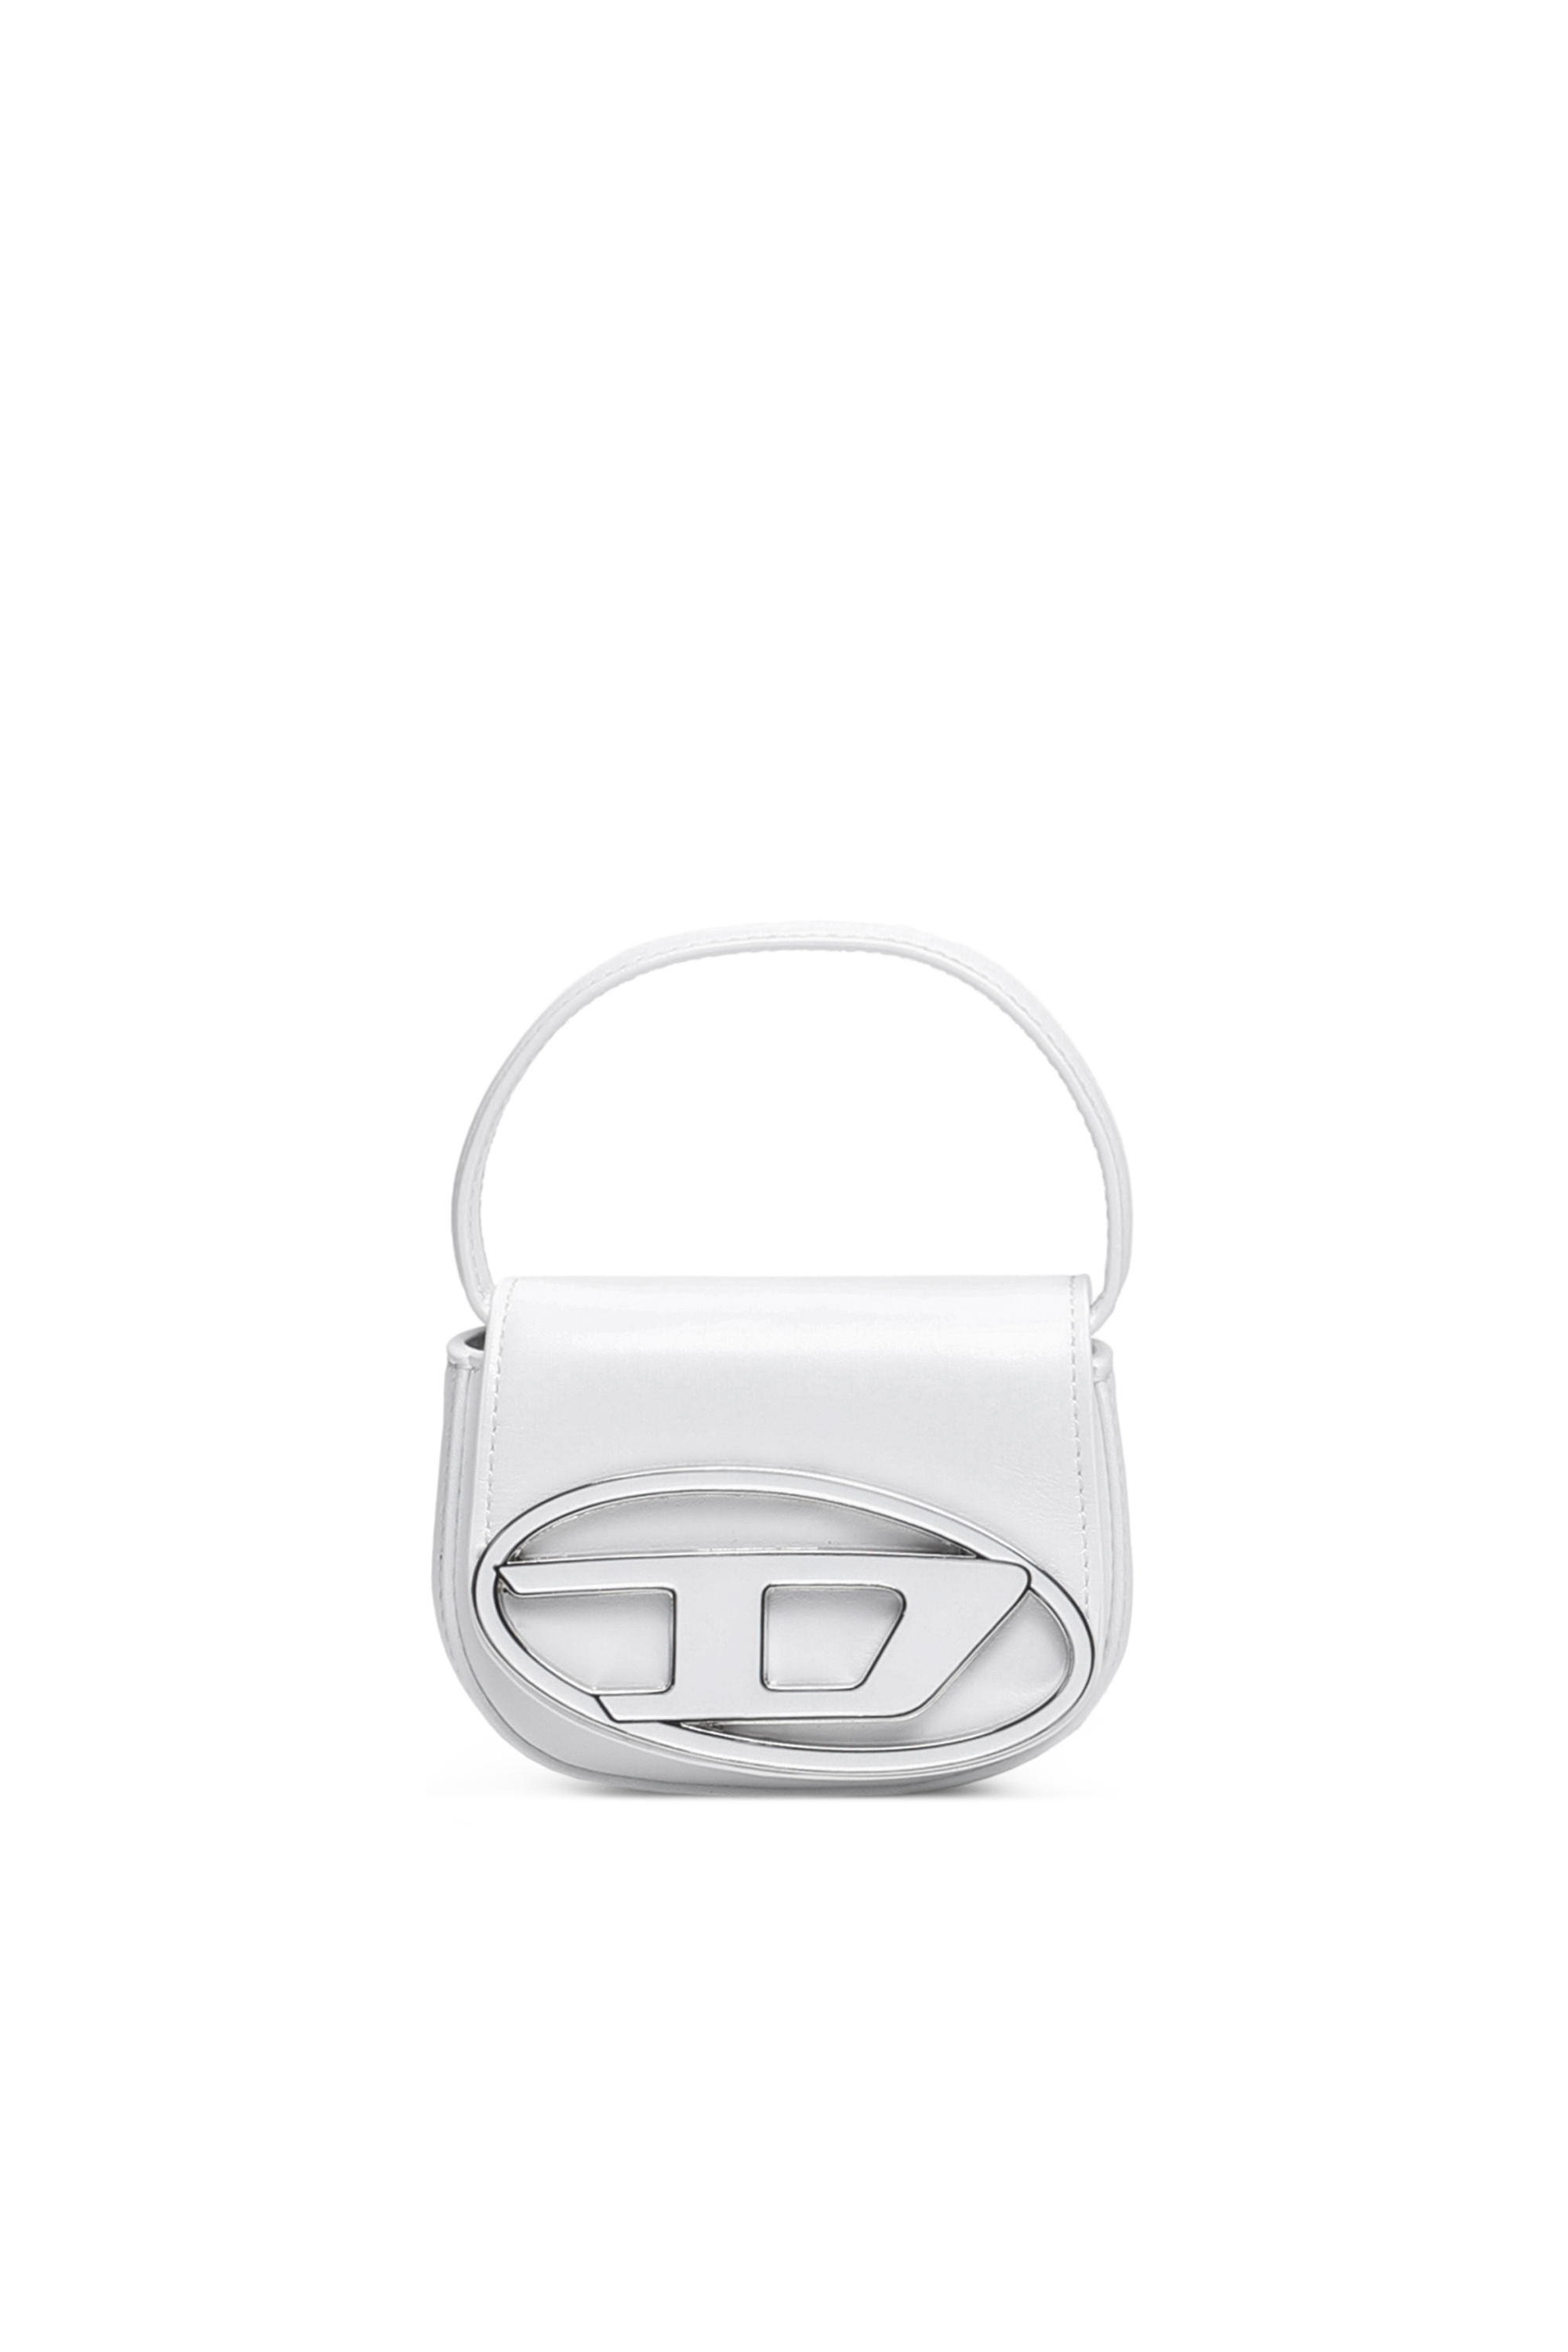 Diesel - Mini borsa con placca D logo - Borse a Mano - Donna - Bianco